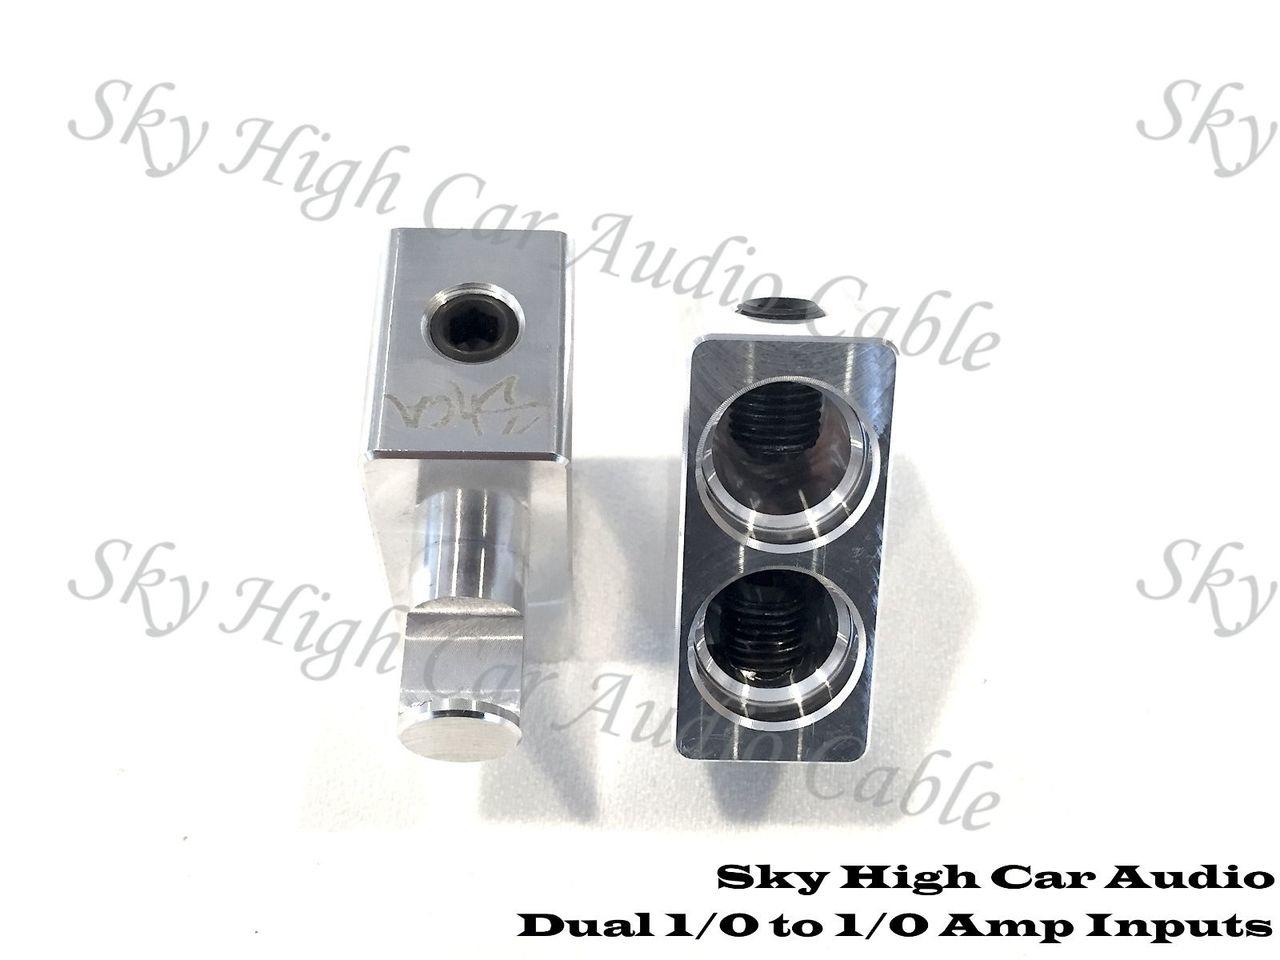 Sky High Car Audio Dual 1/0 to 1/0 Gauge Inputs